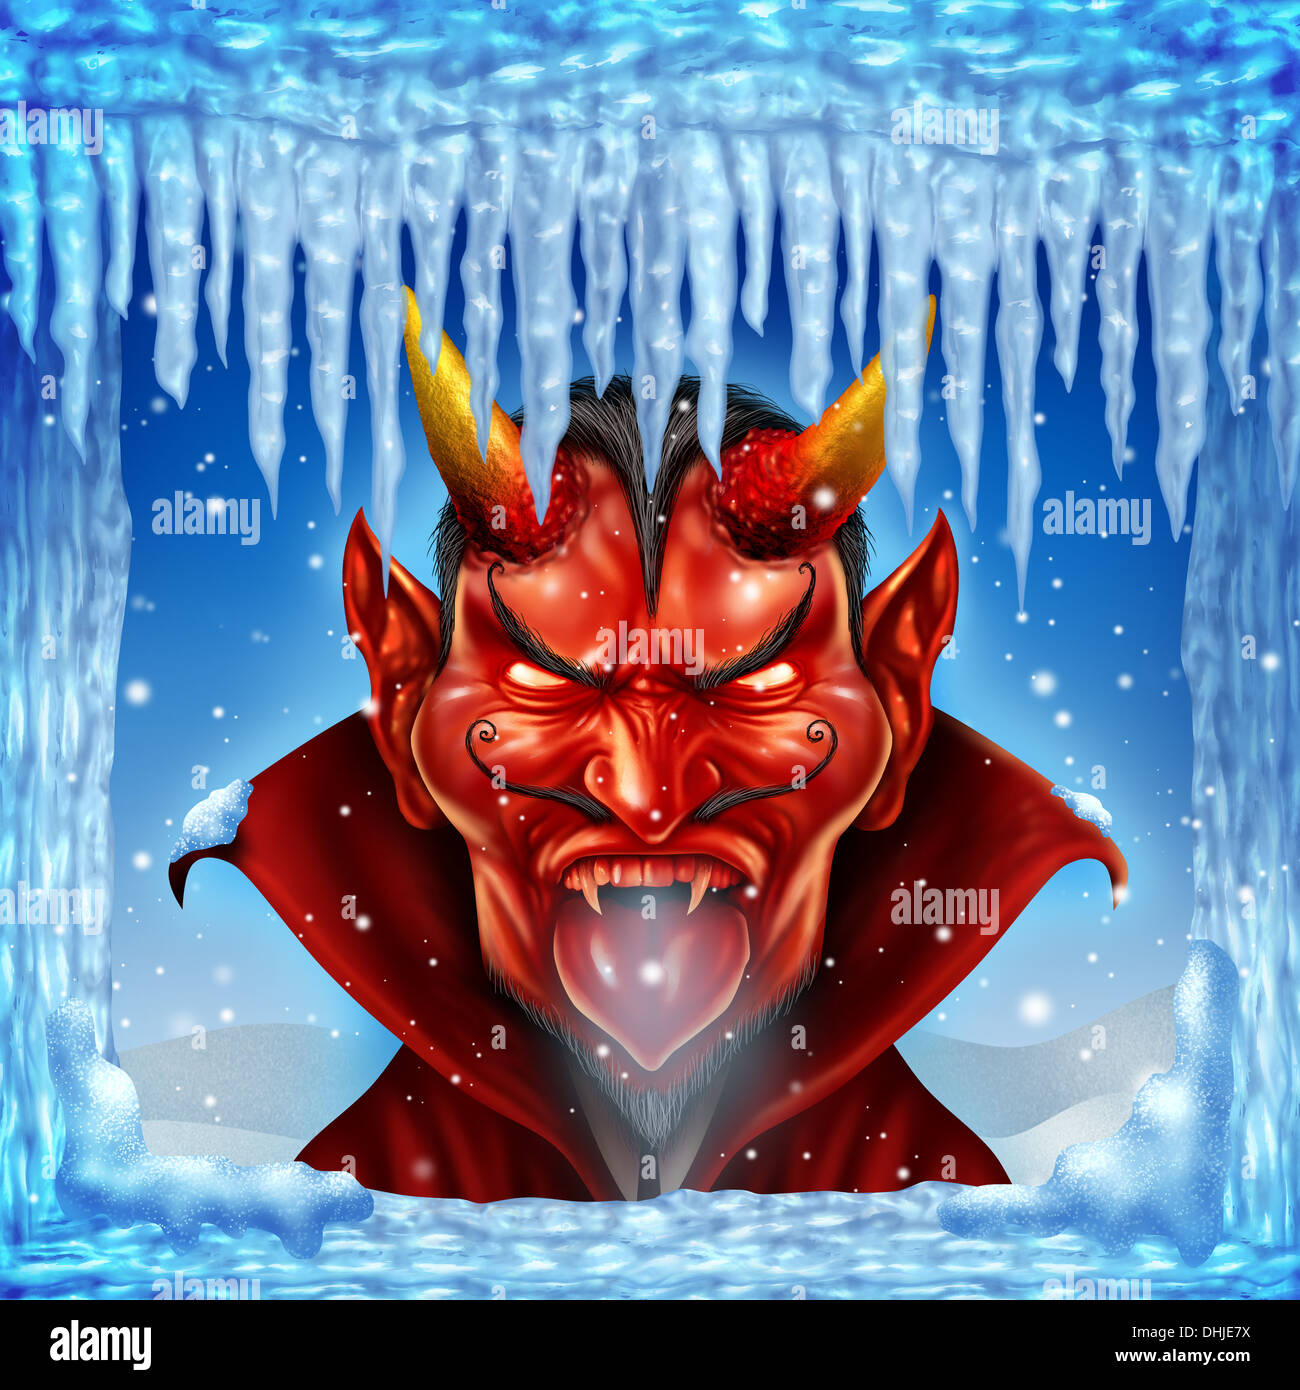 Als Konzept mit einem kalten rote Teufel-Charakter in einer eisigen Winter Umgebung mit Schnee und Eiszapfen auf einem blauen Himmel Hölle zufriert Stockfoto